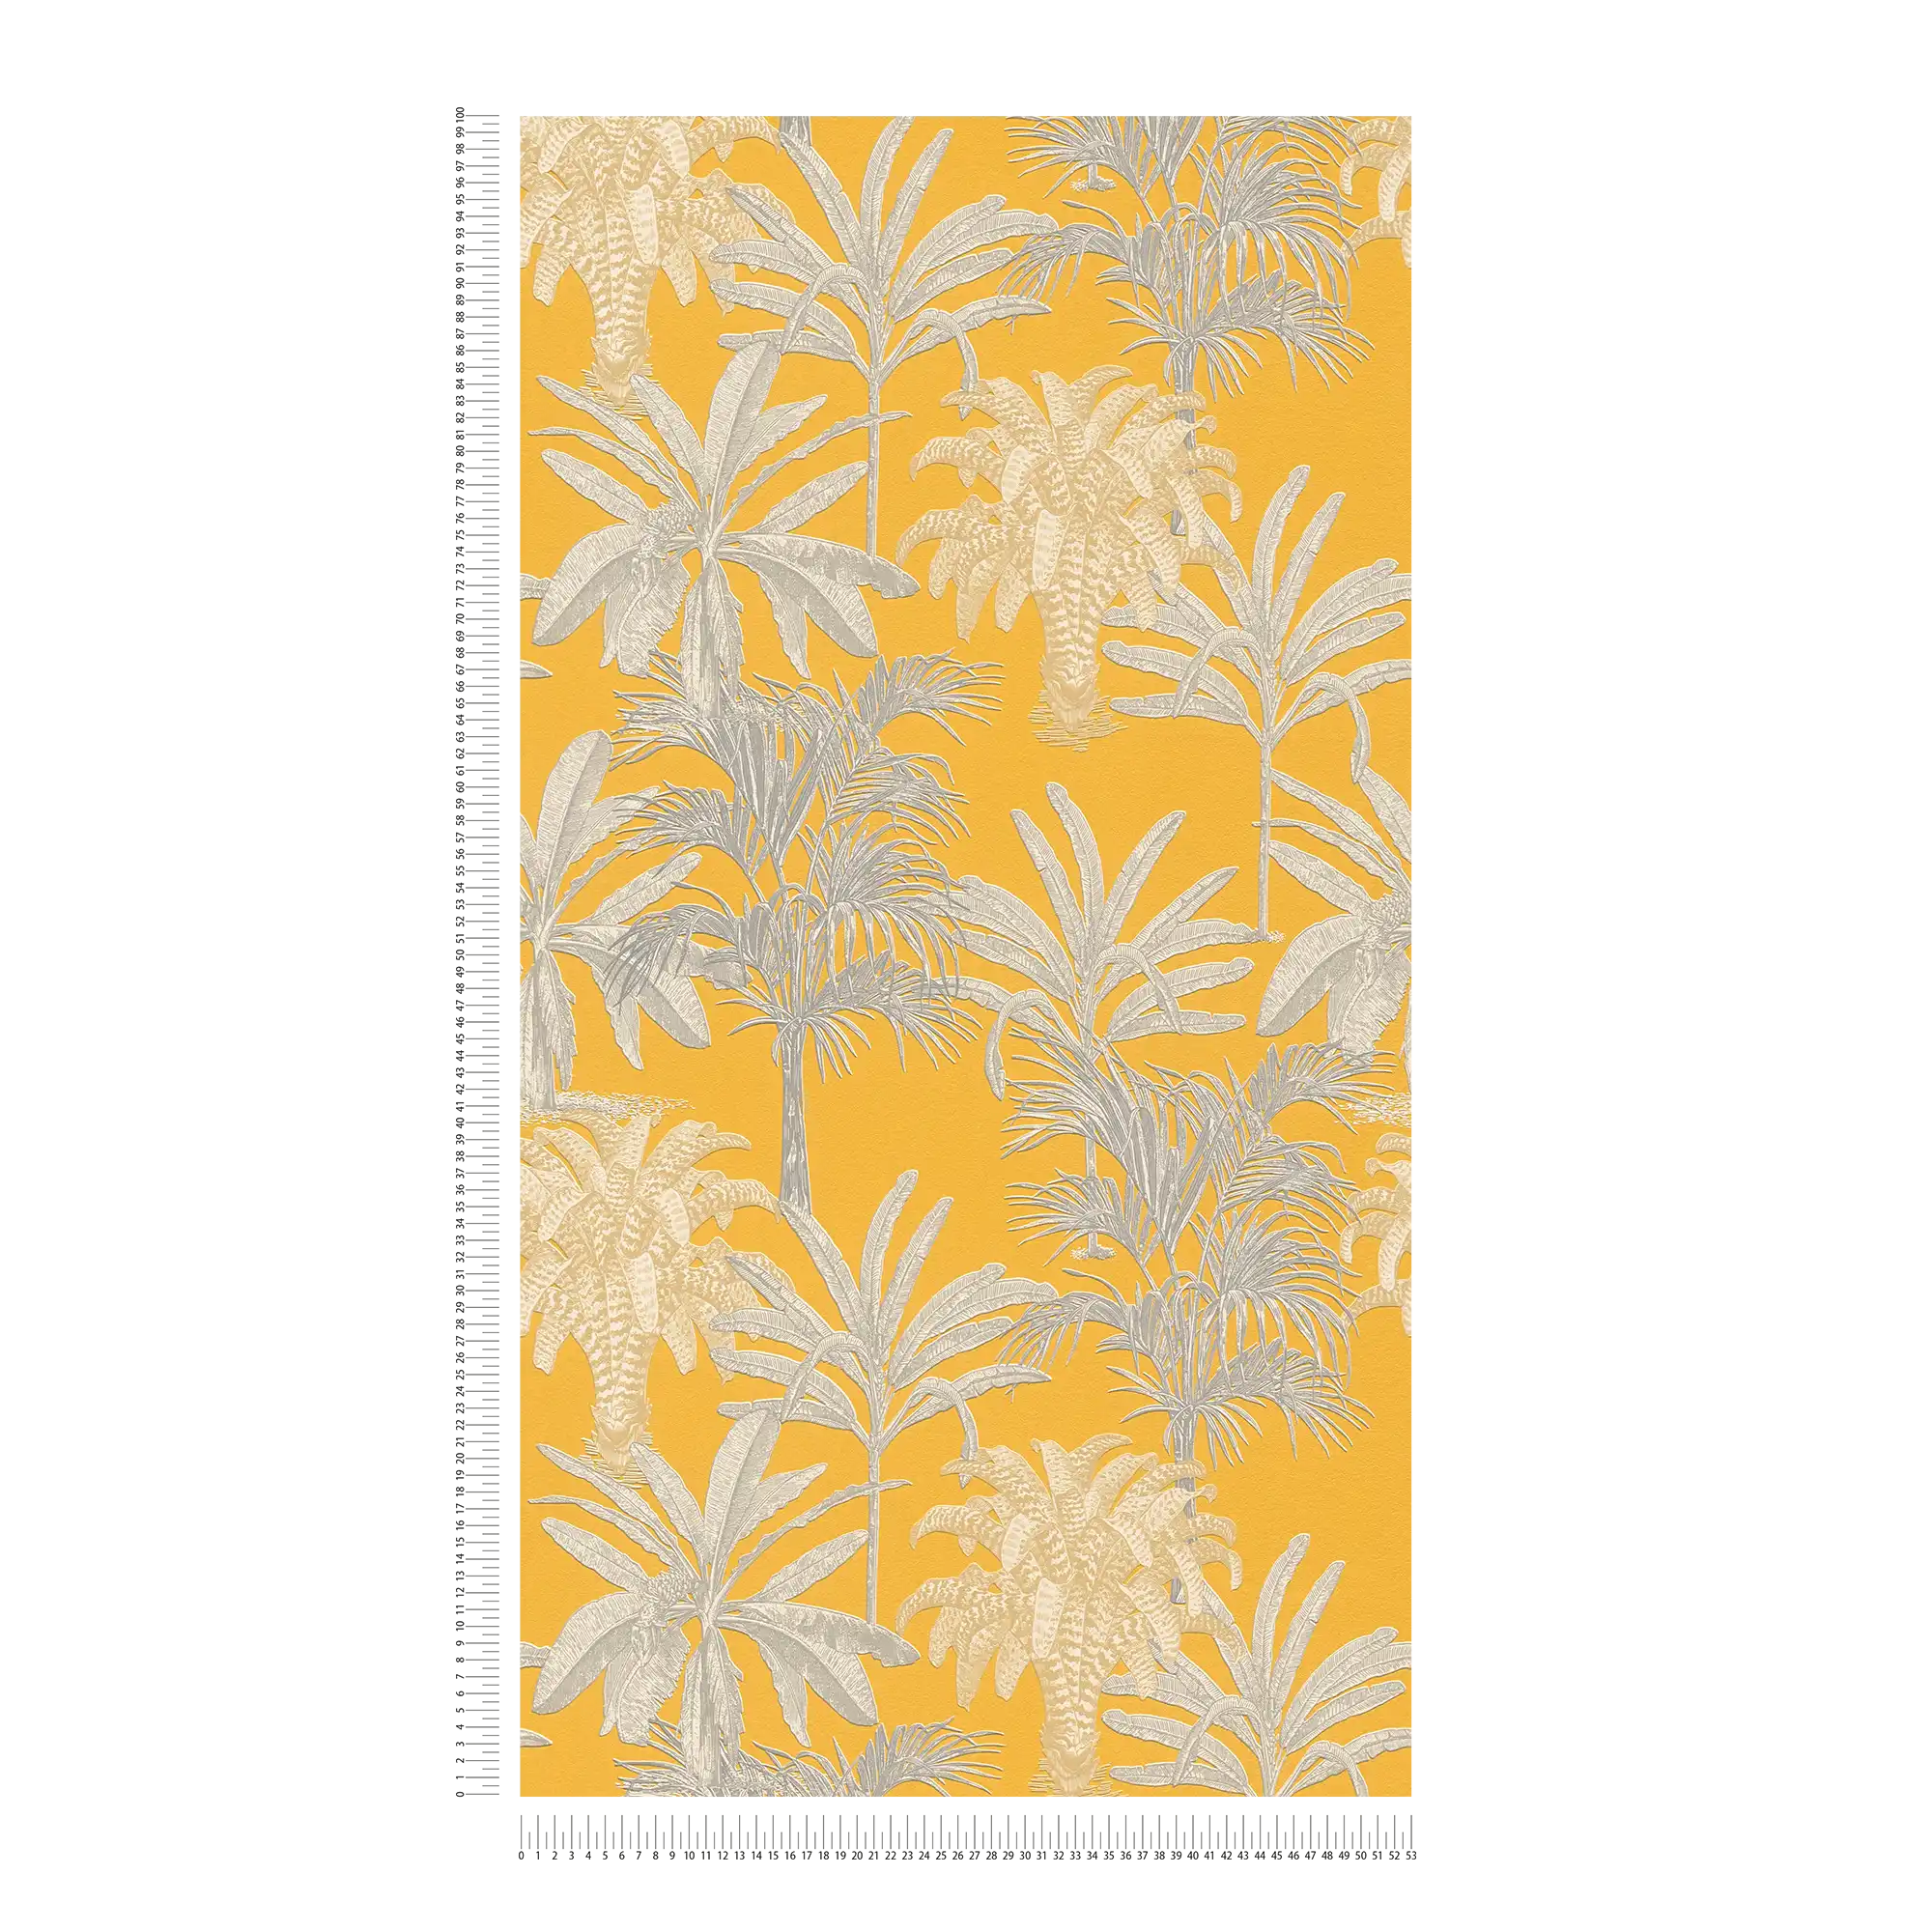             Papier peint palmier jaune moutarde avec motifs structurés - jaune, gris
        